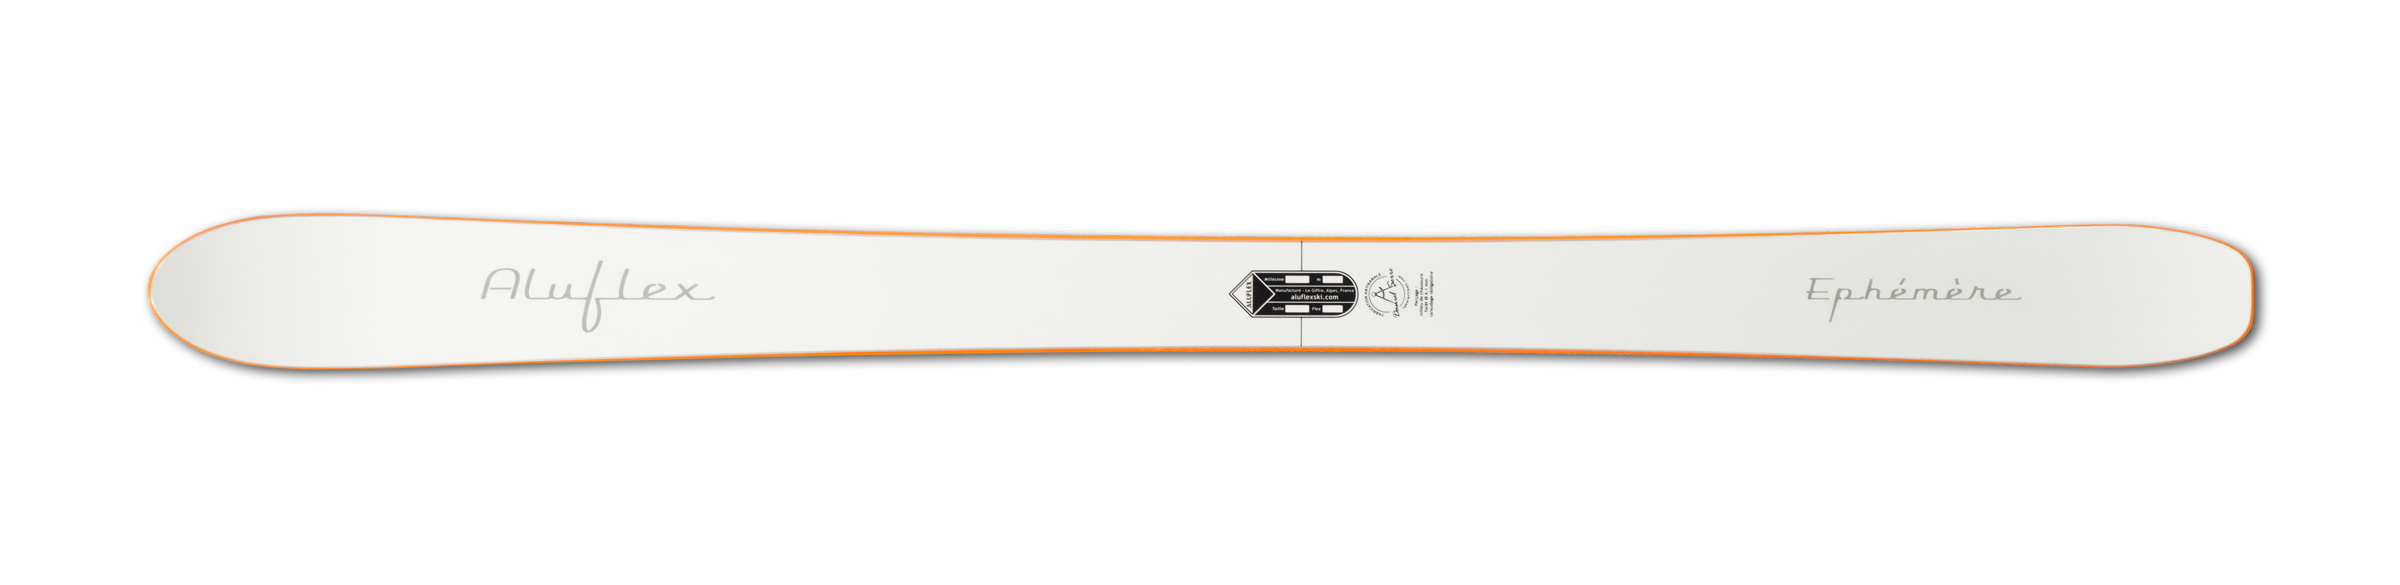 Ski Aluflex Éphémère blanc orange